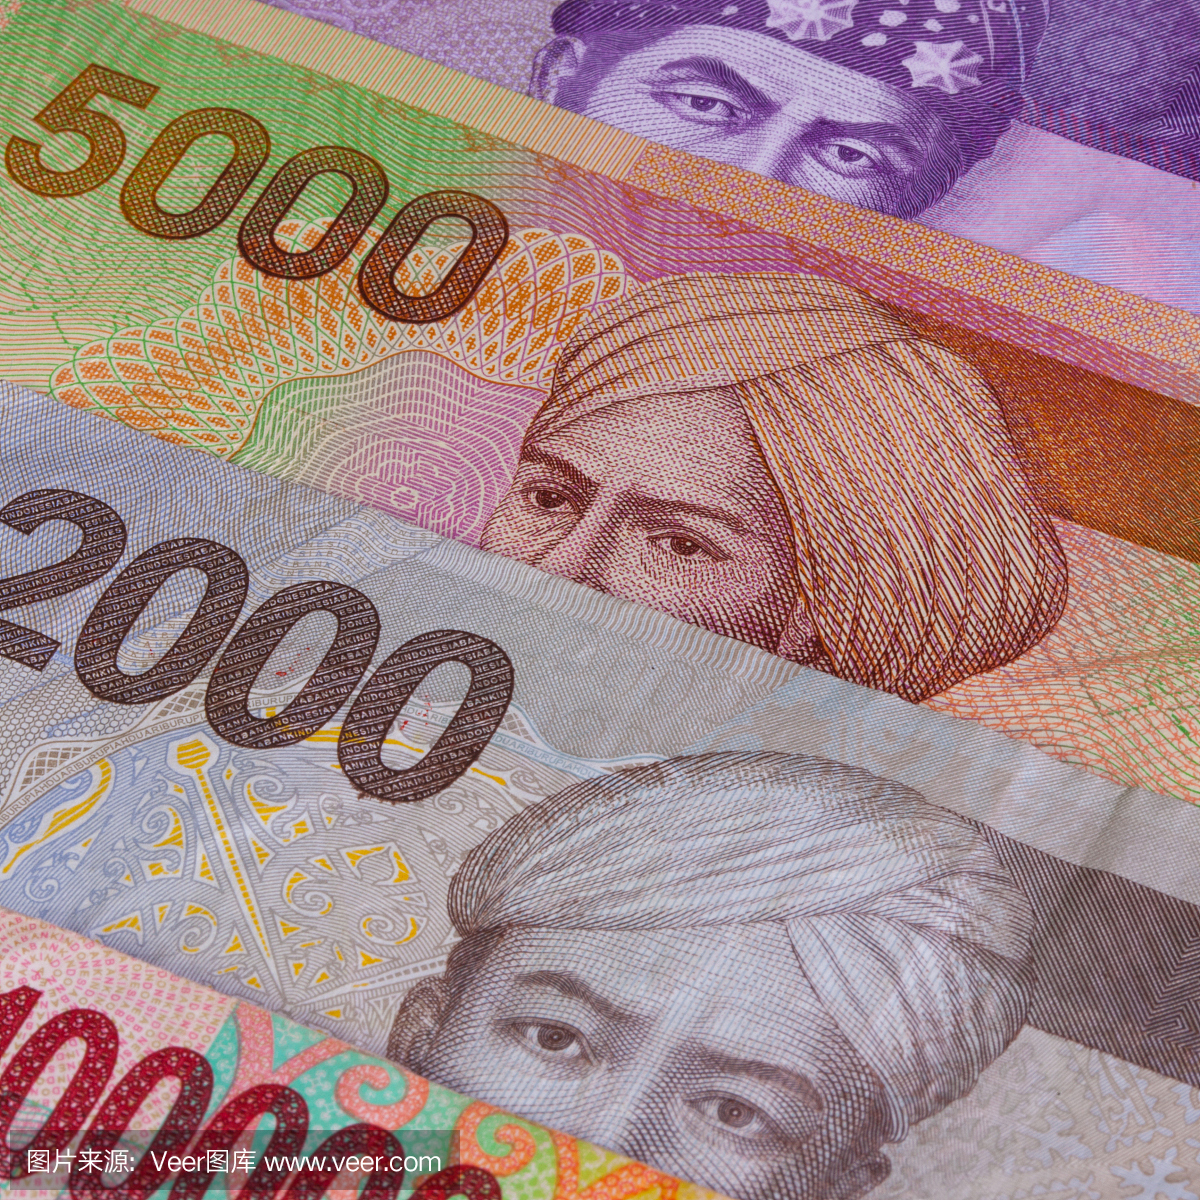 印尼货币,印尼币,印度尼西亚钞票,